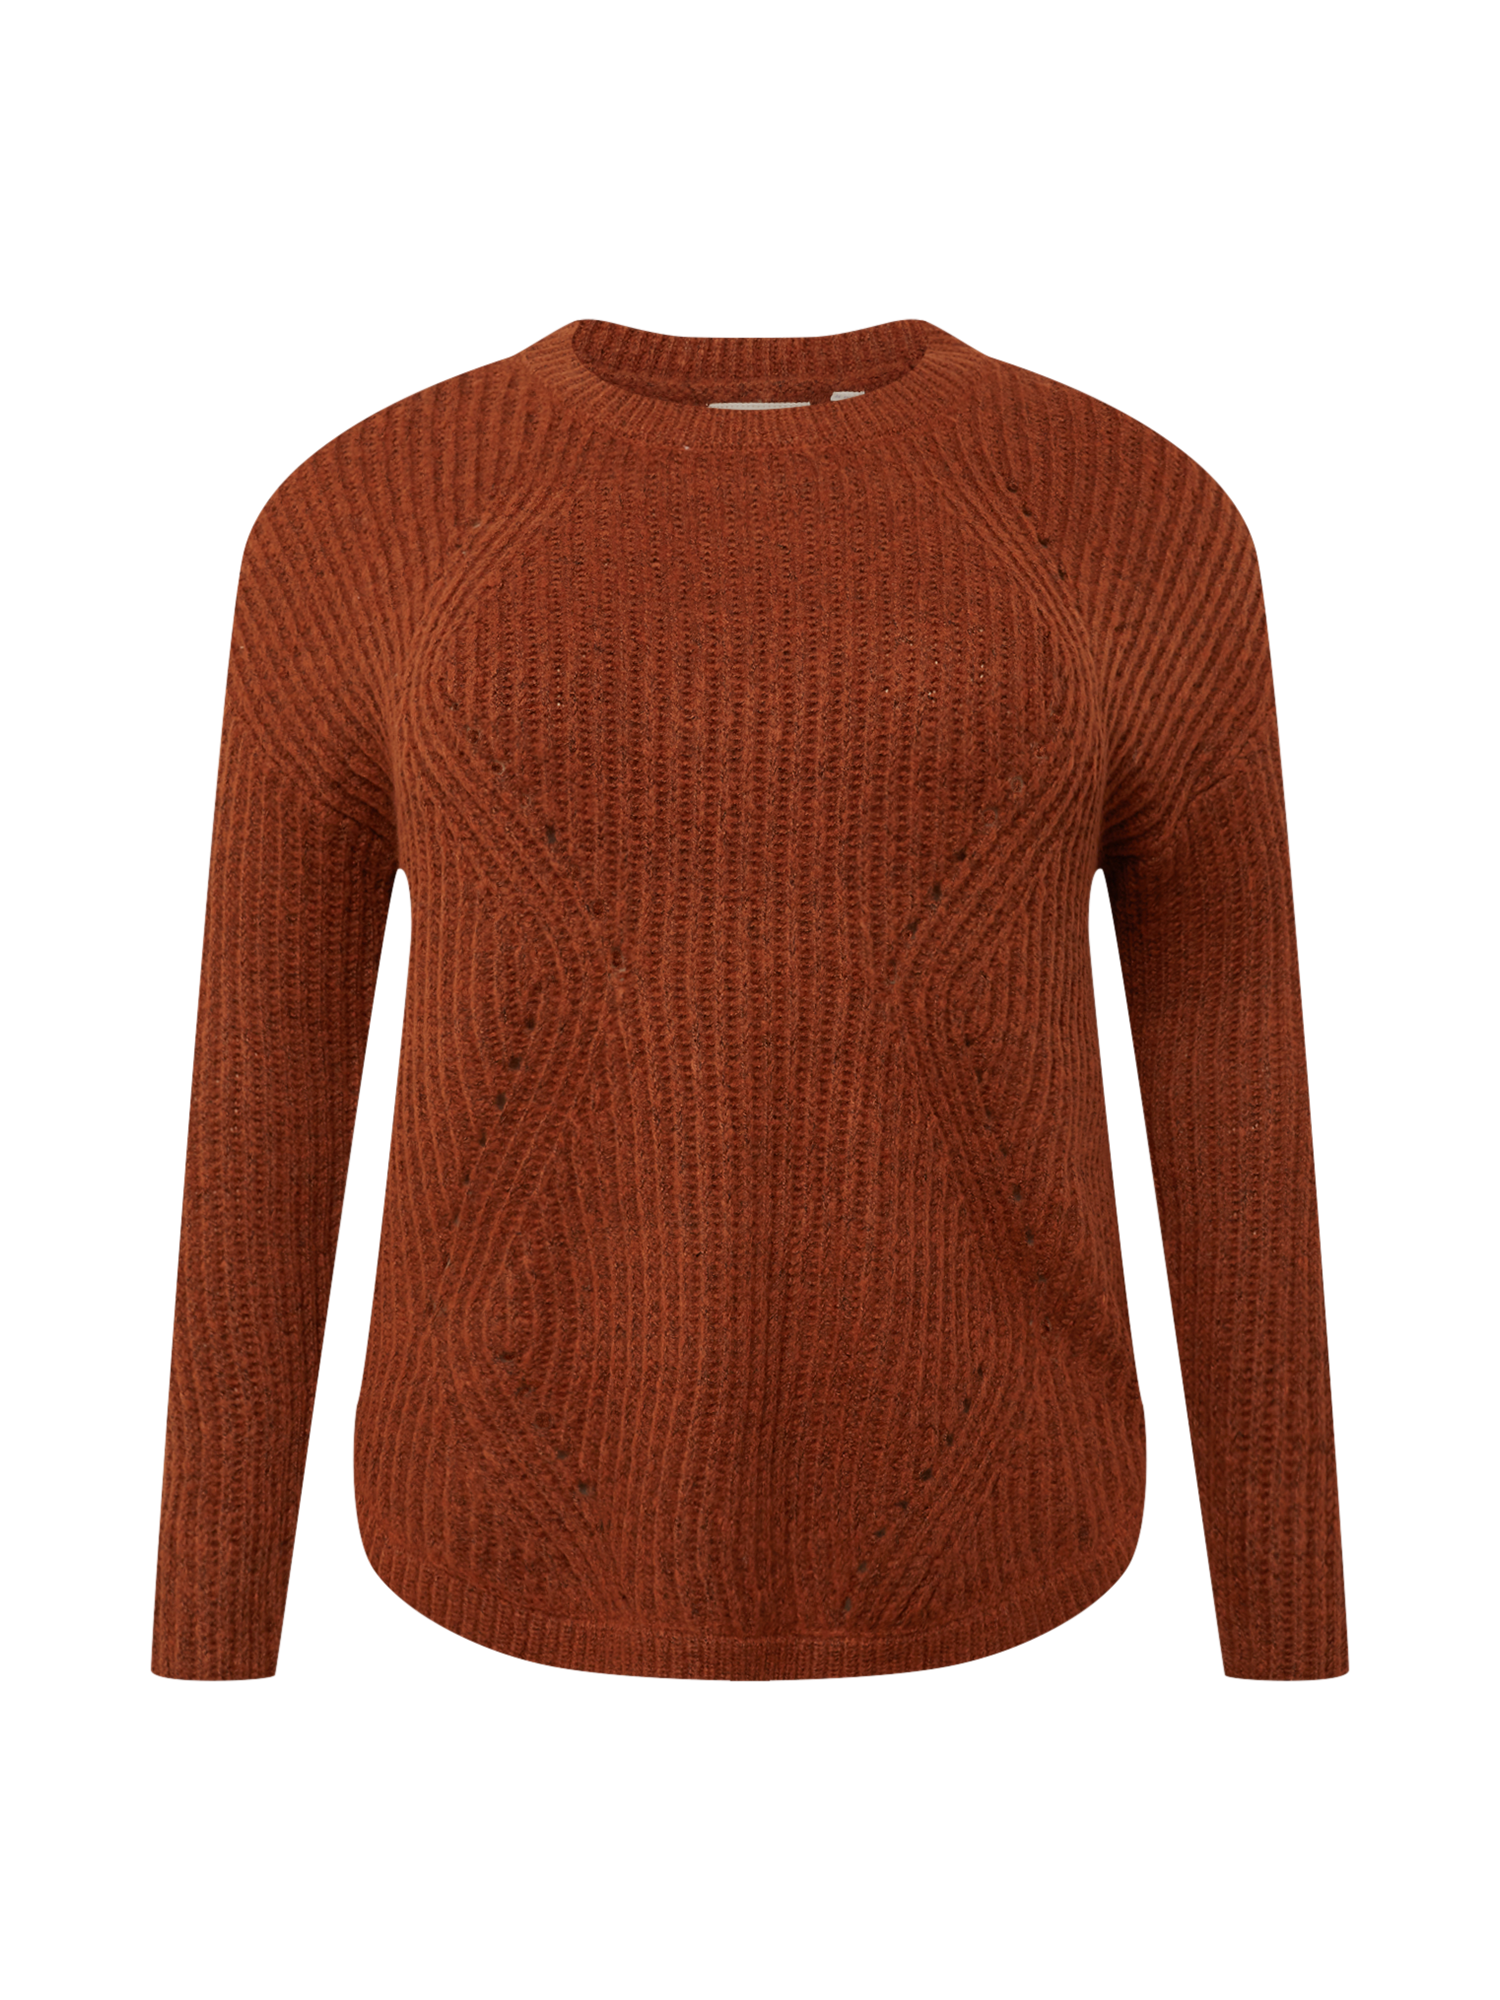 aacOX Odzież ONLY Carmakoma Sweter Bernie w kolorze Rdzawobrązowym 